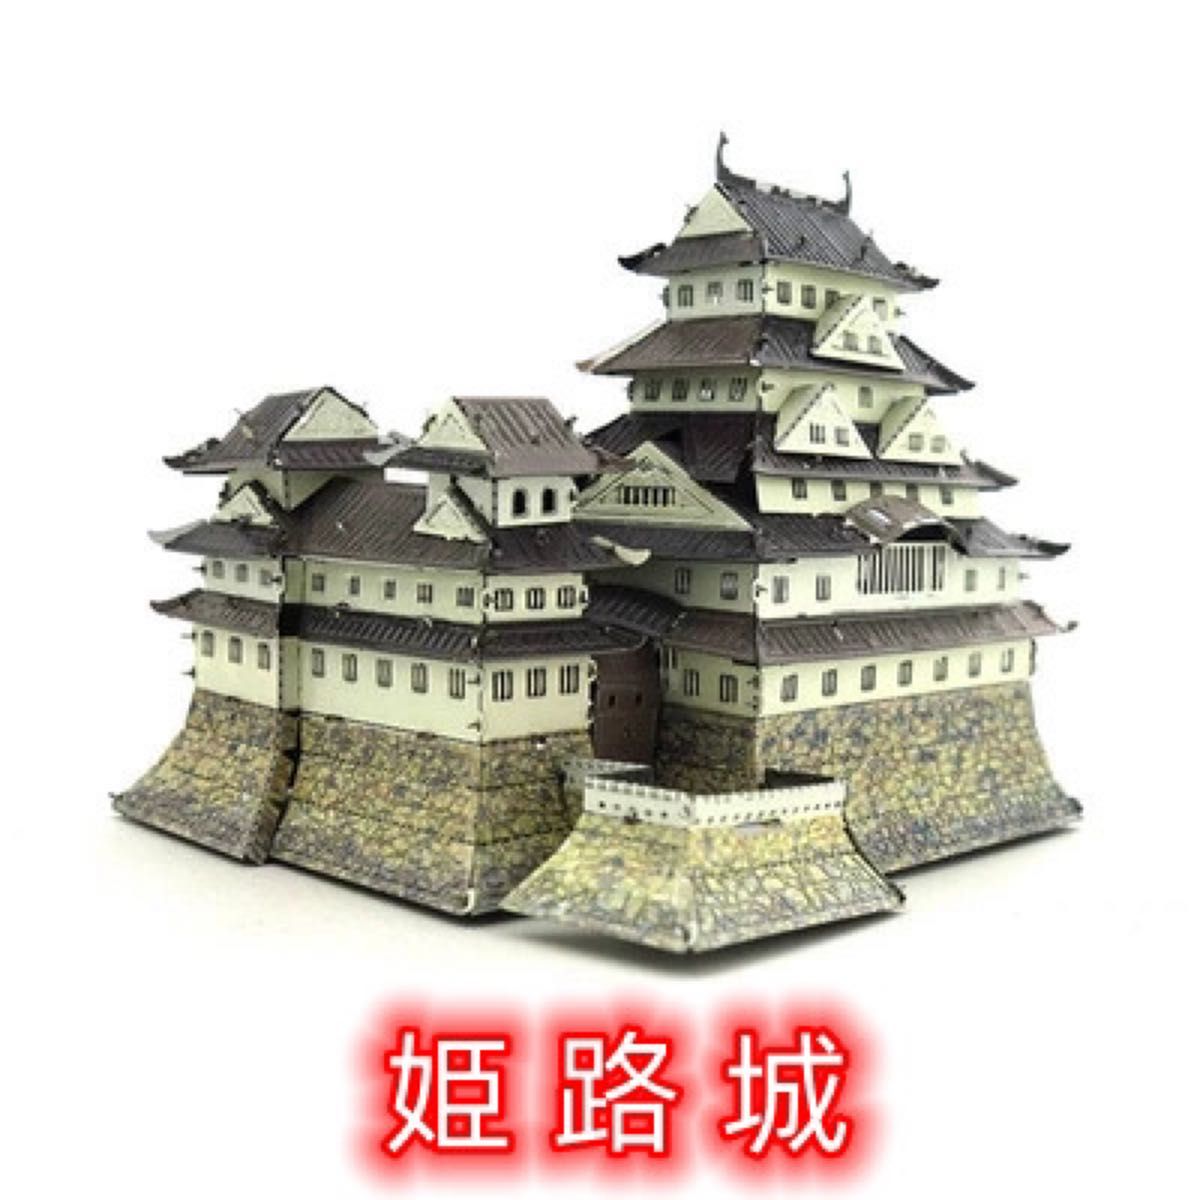 立体パズル 3Dメタルパズル 組立て模型 姫路城 家族向け 知育玩具 贈り物 カラフル 日本の名城 城